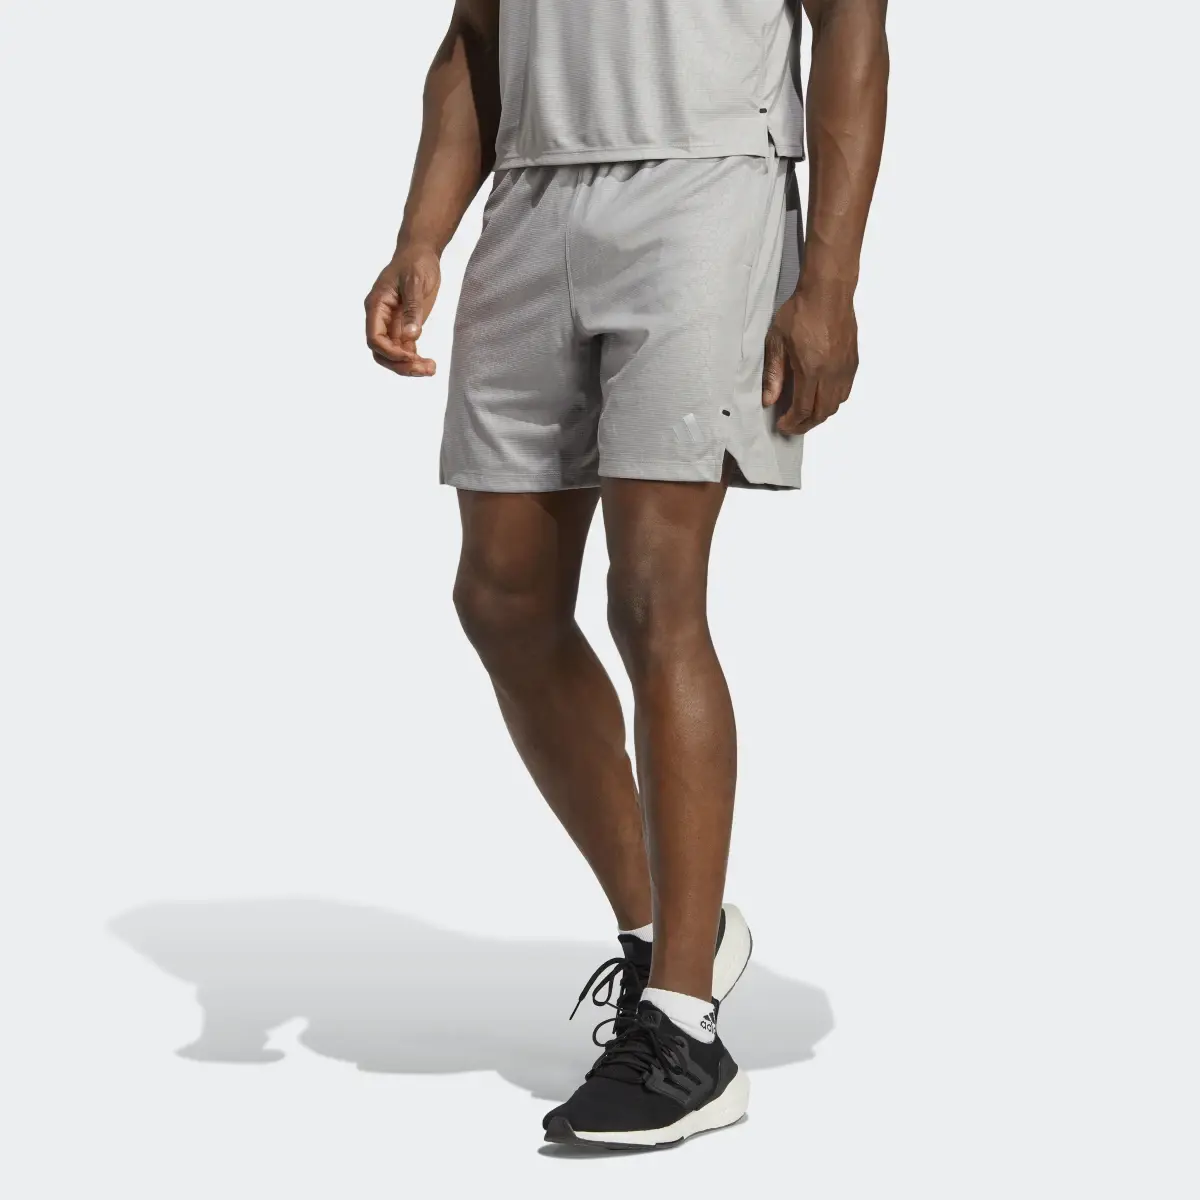 Adidas Workout PU Print Shorts. 1